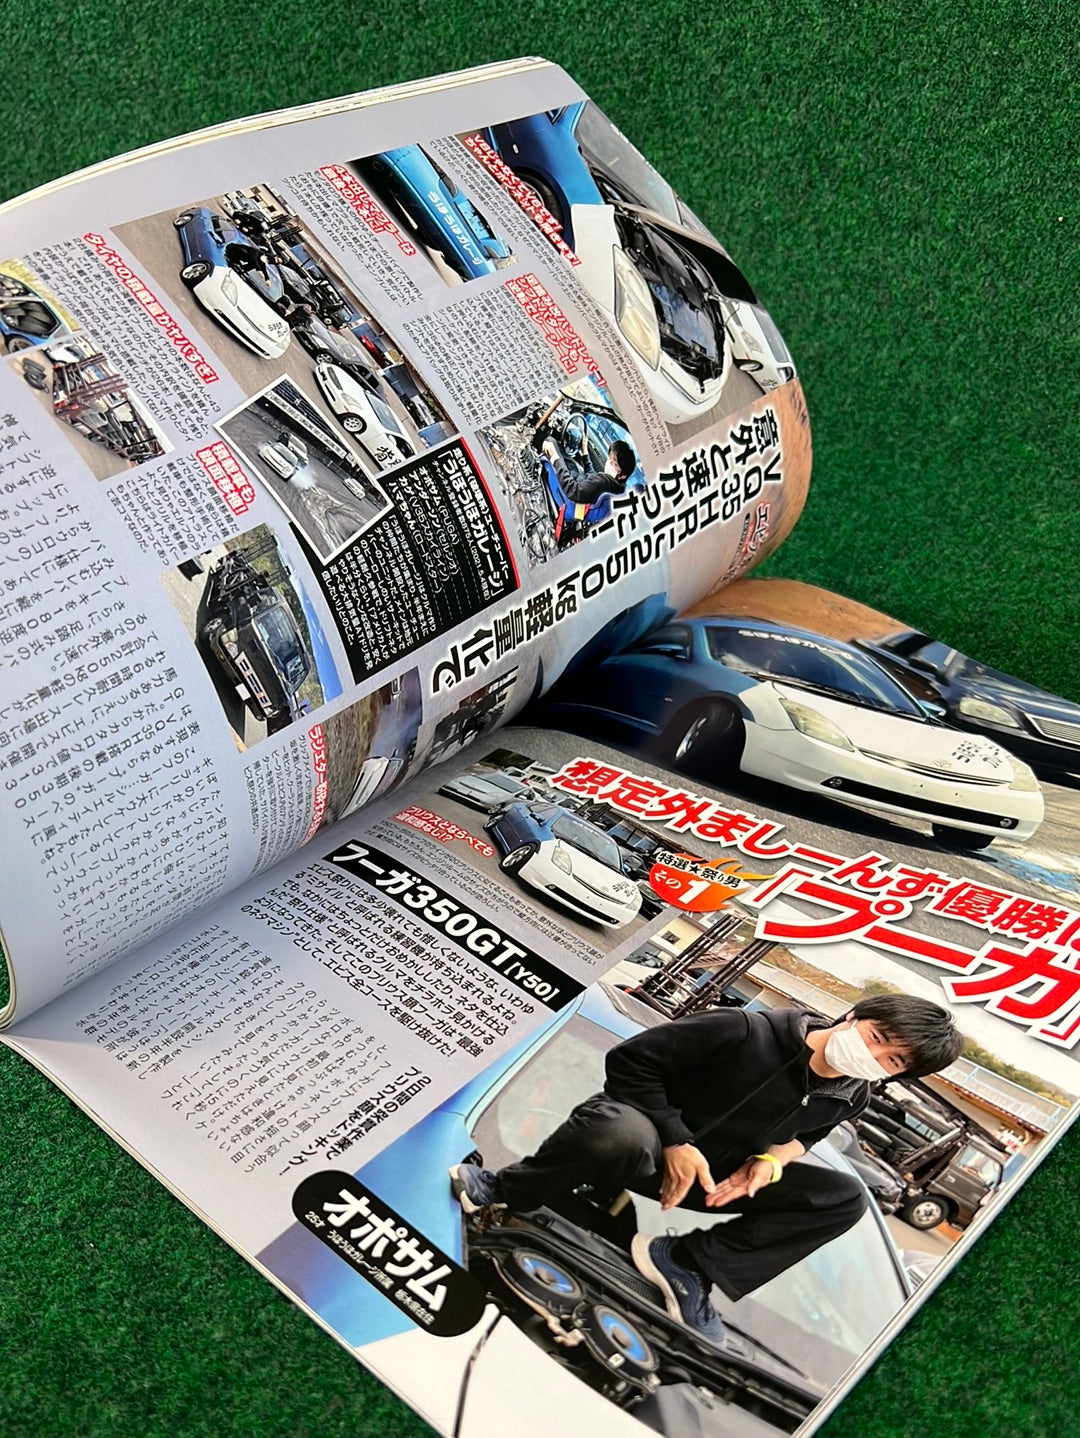 Drift Tengoku Magazine -  June 2021